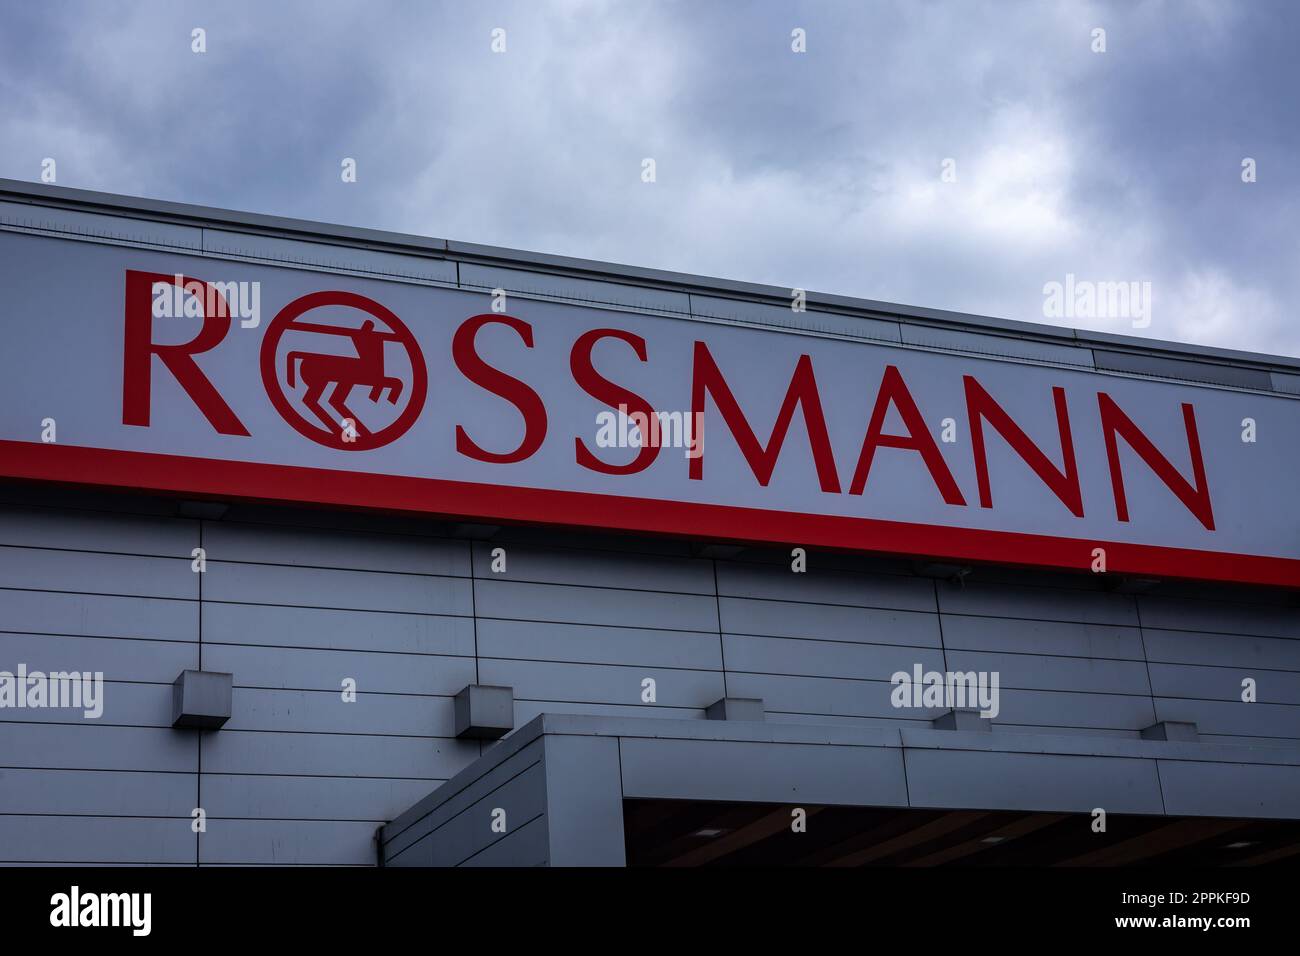 The employee app for ROSSMANN